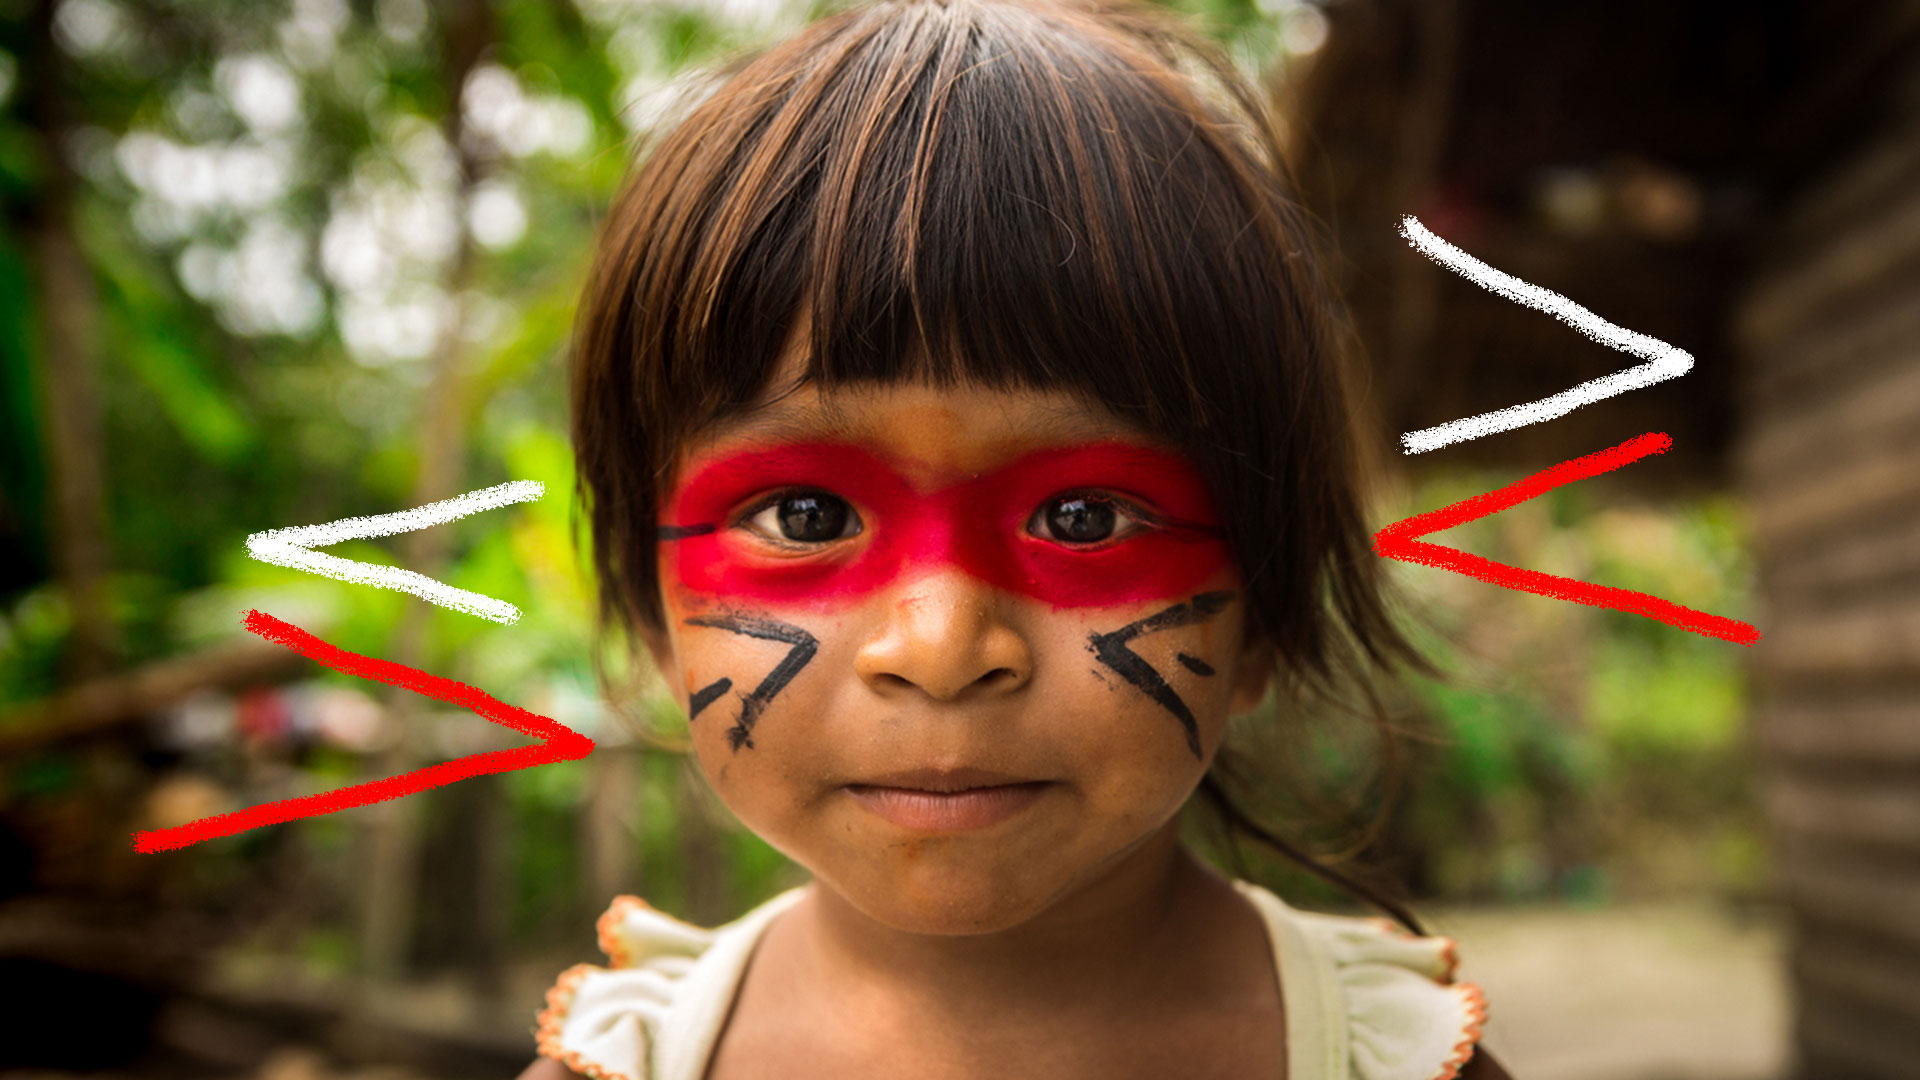 Criança indígena com o rosto pintado de urucum olhando para a foto